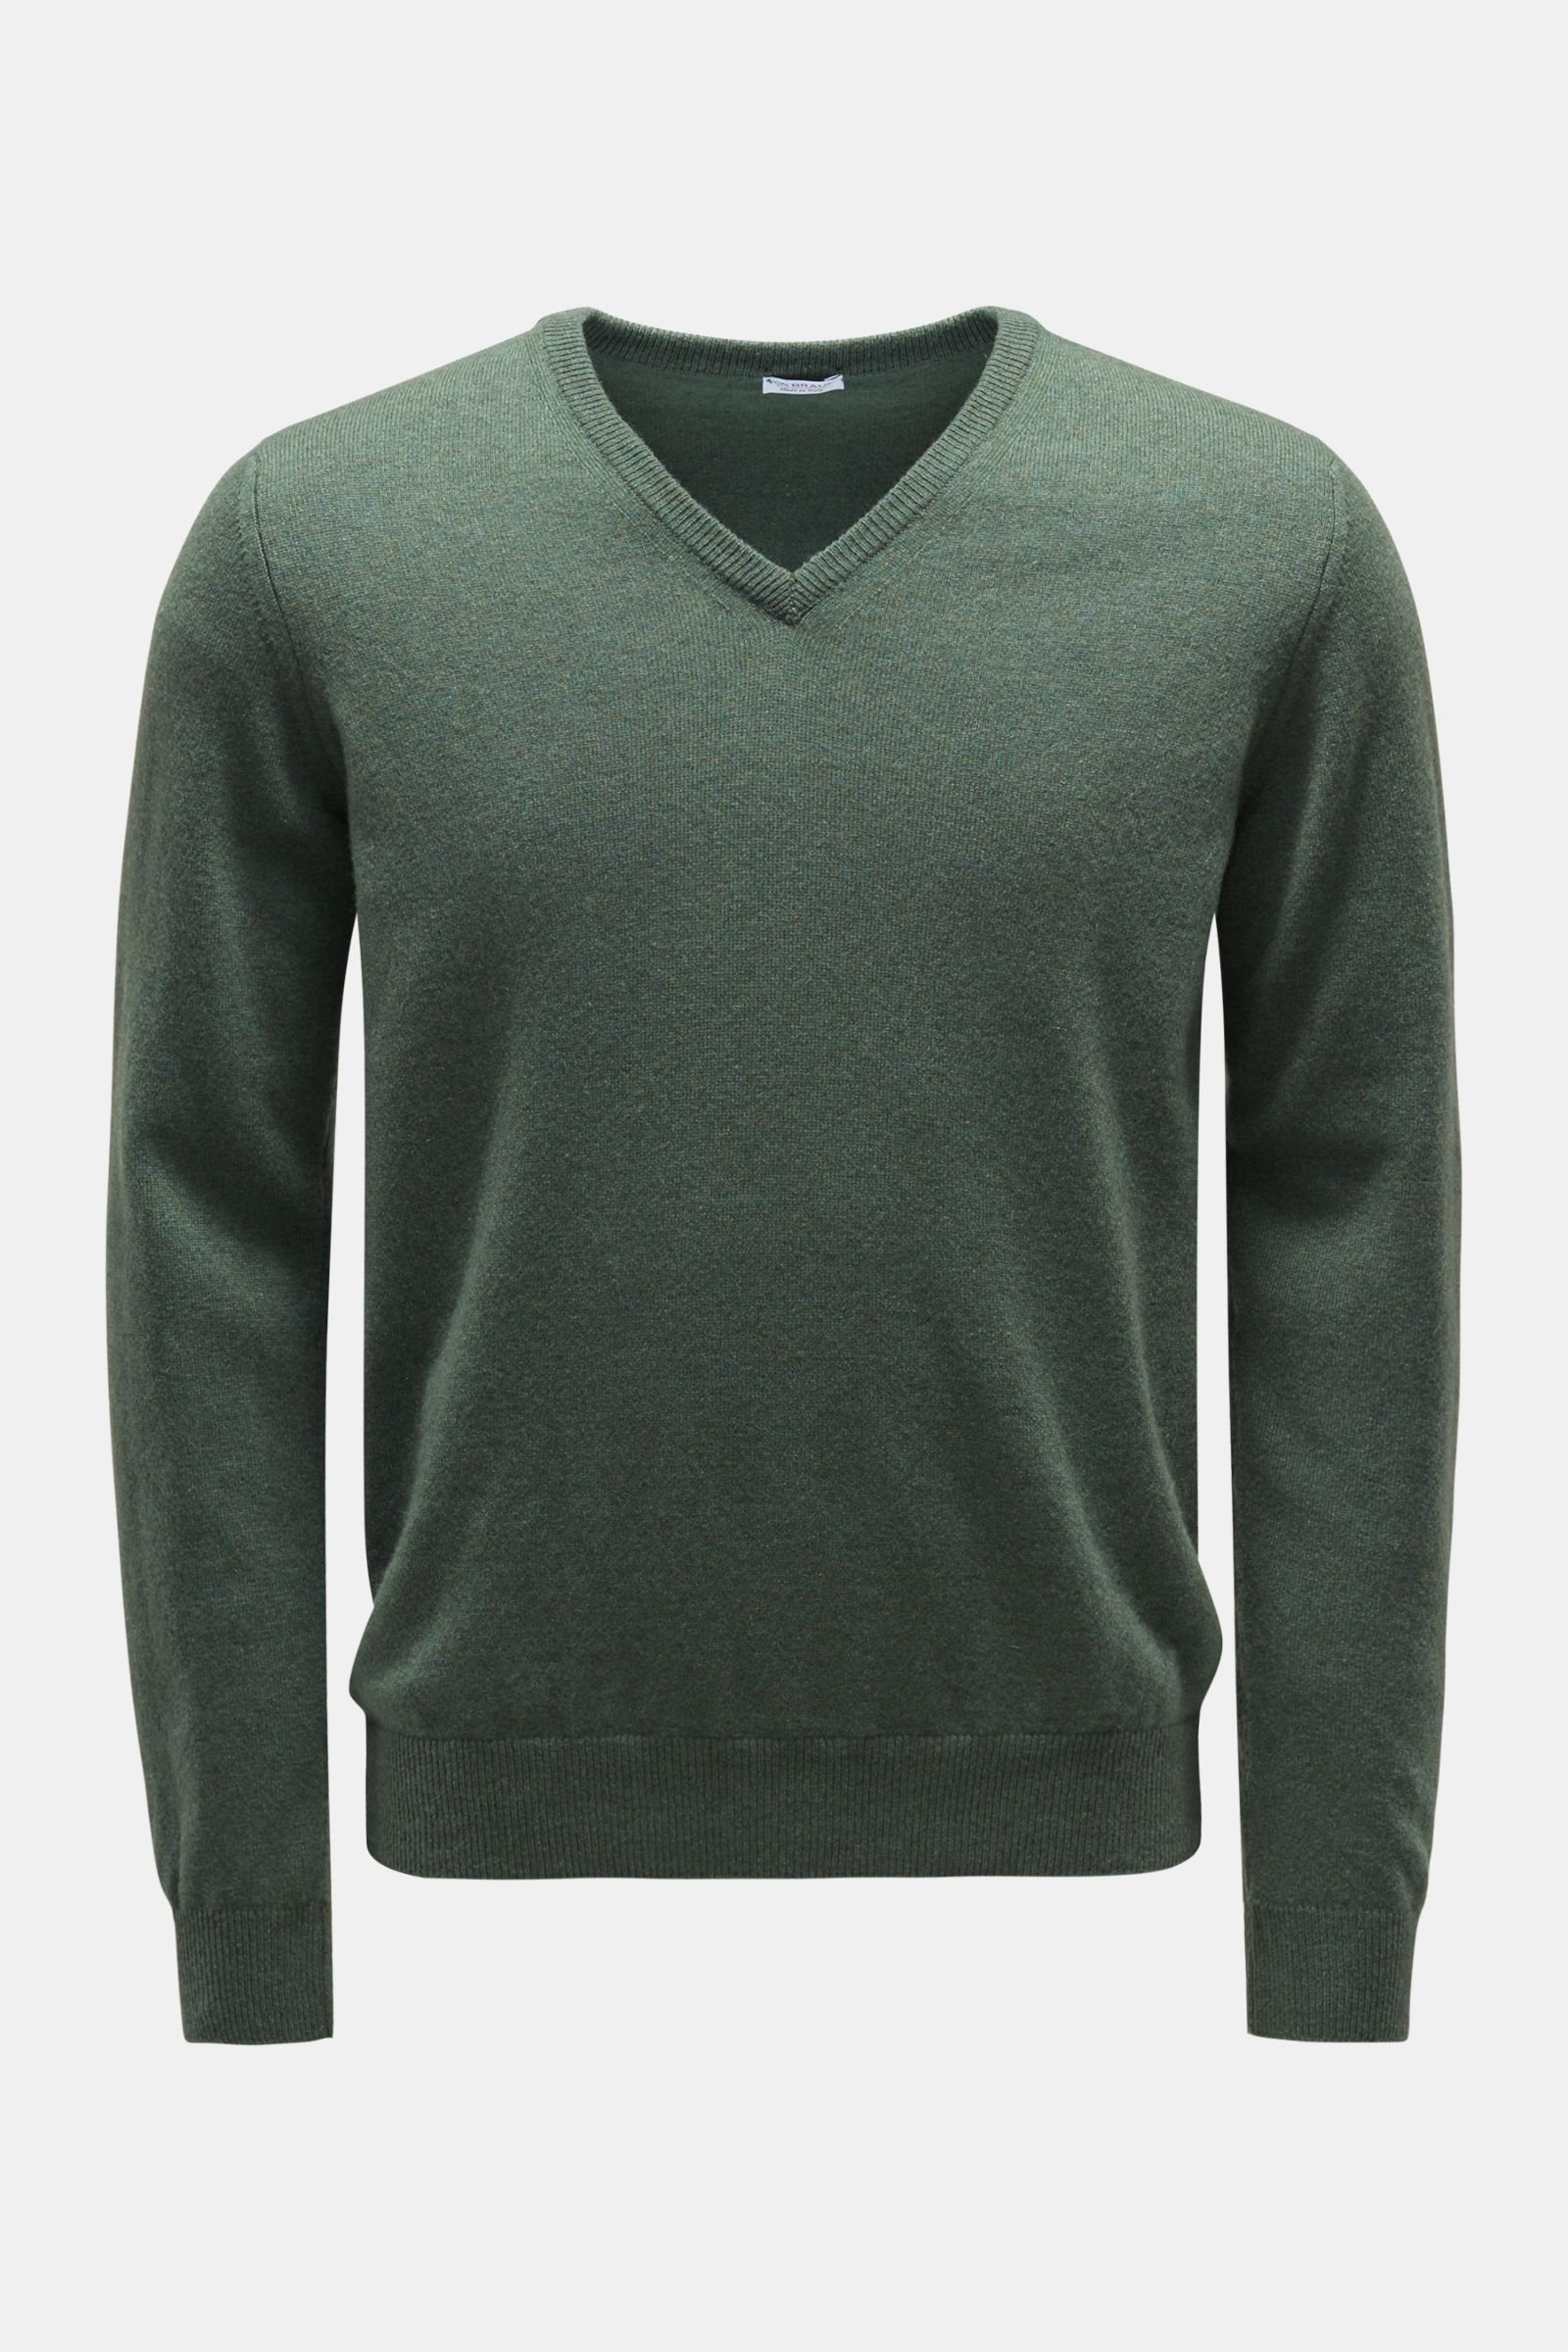 Cashmere V-neck jumper grey-green